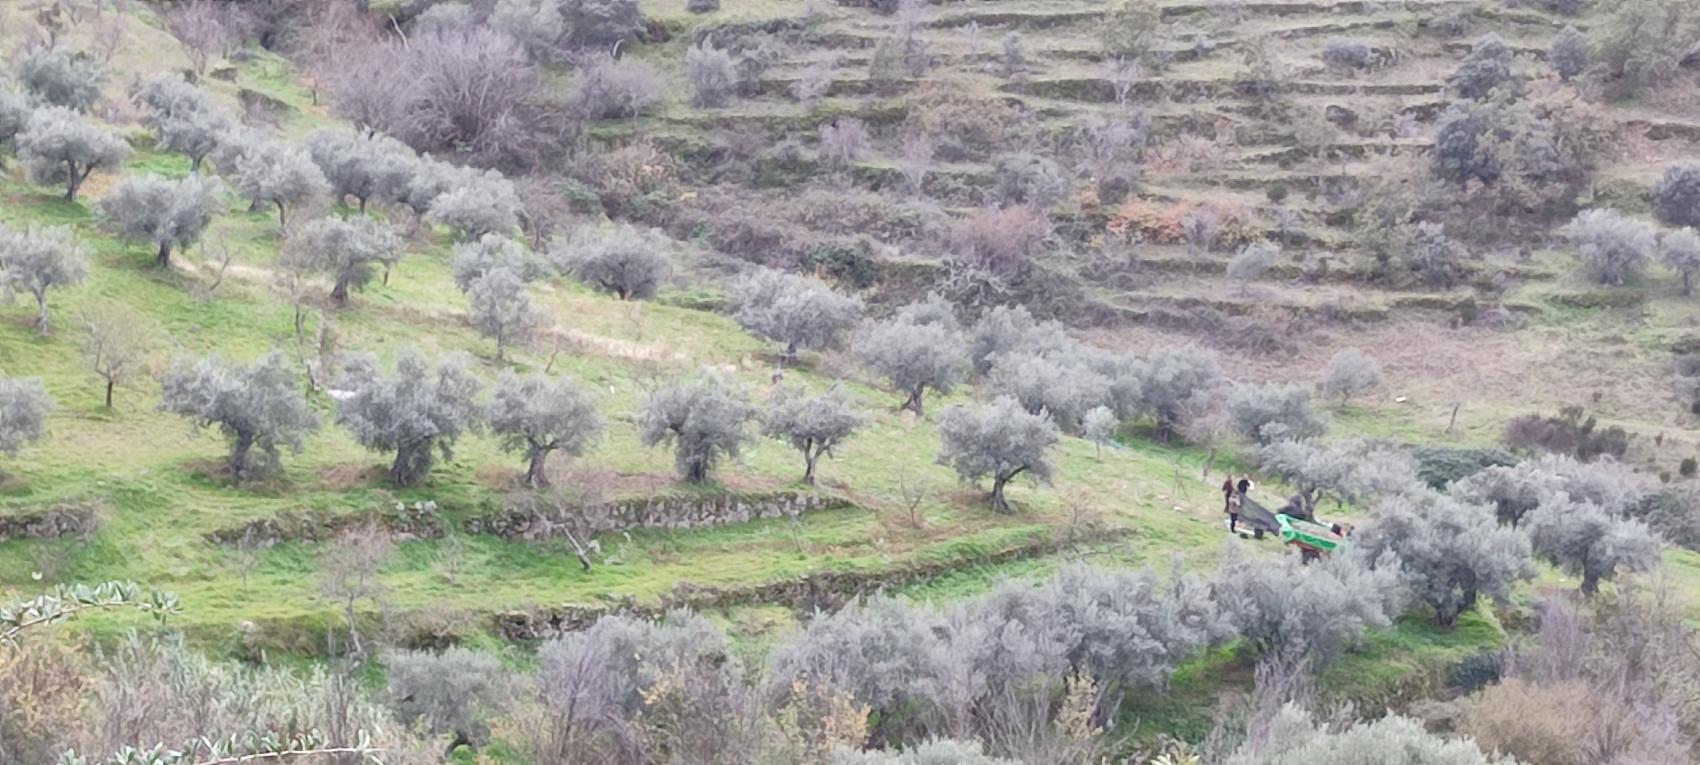 La importancia del aciete de oliva en la alimentación